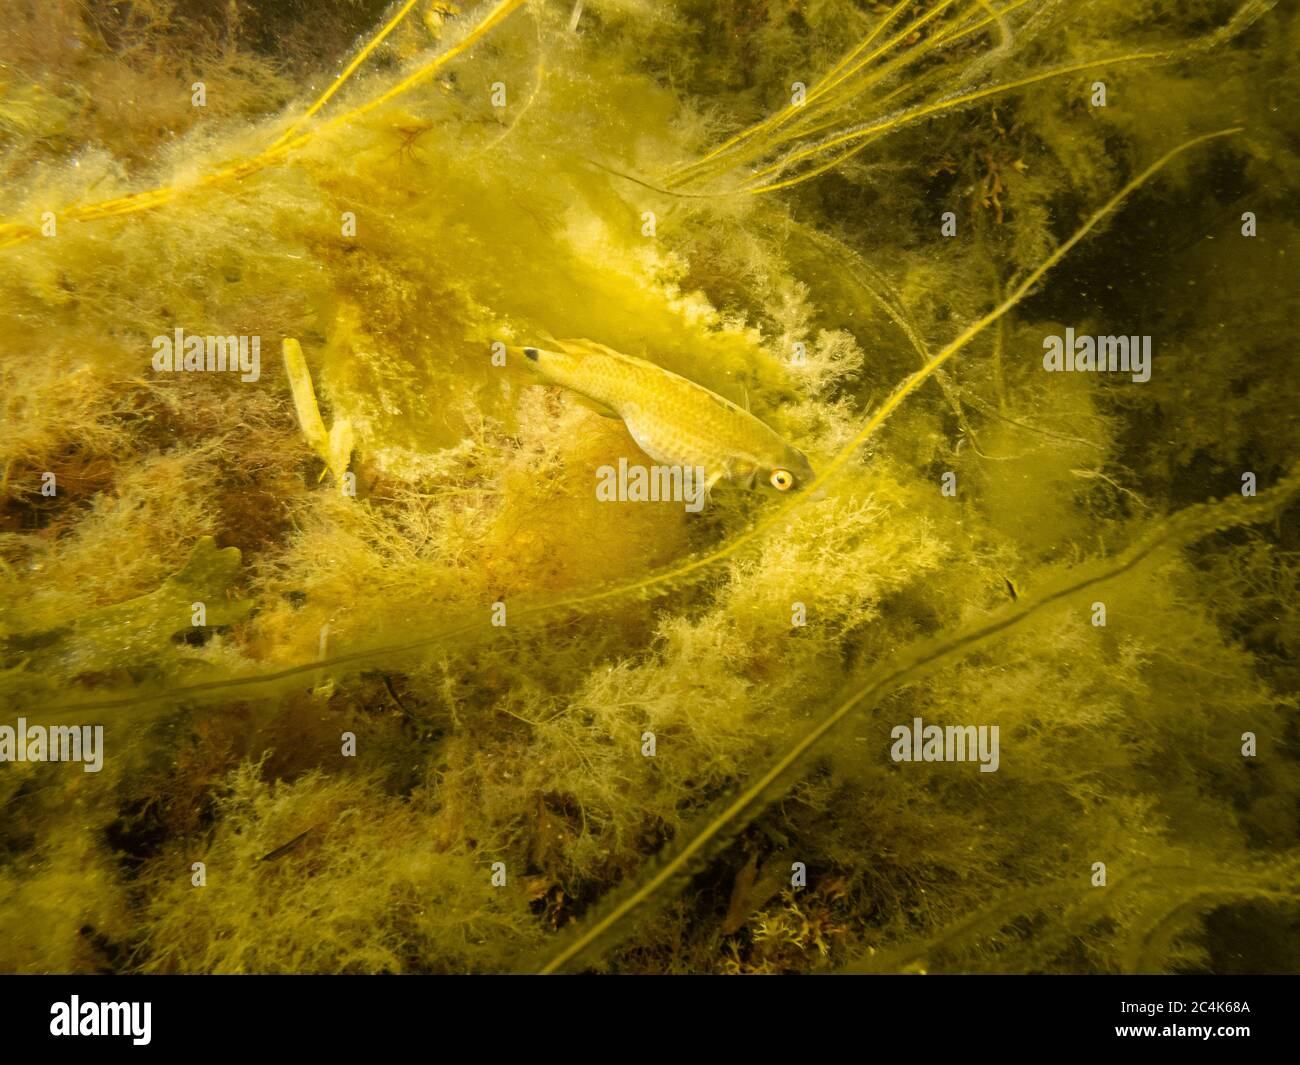 Un petit poisson jaune se cachant dans l'algue jaune. Photo d'une plongée sous-marine à Oresund, Malmo, Suède. Photo de haute qualité Banque D'Images